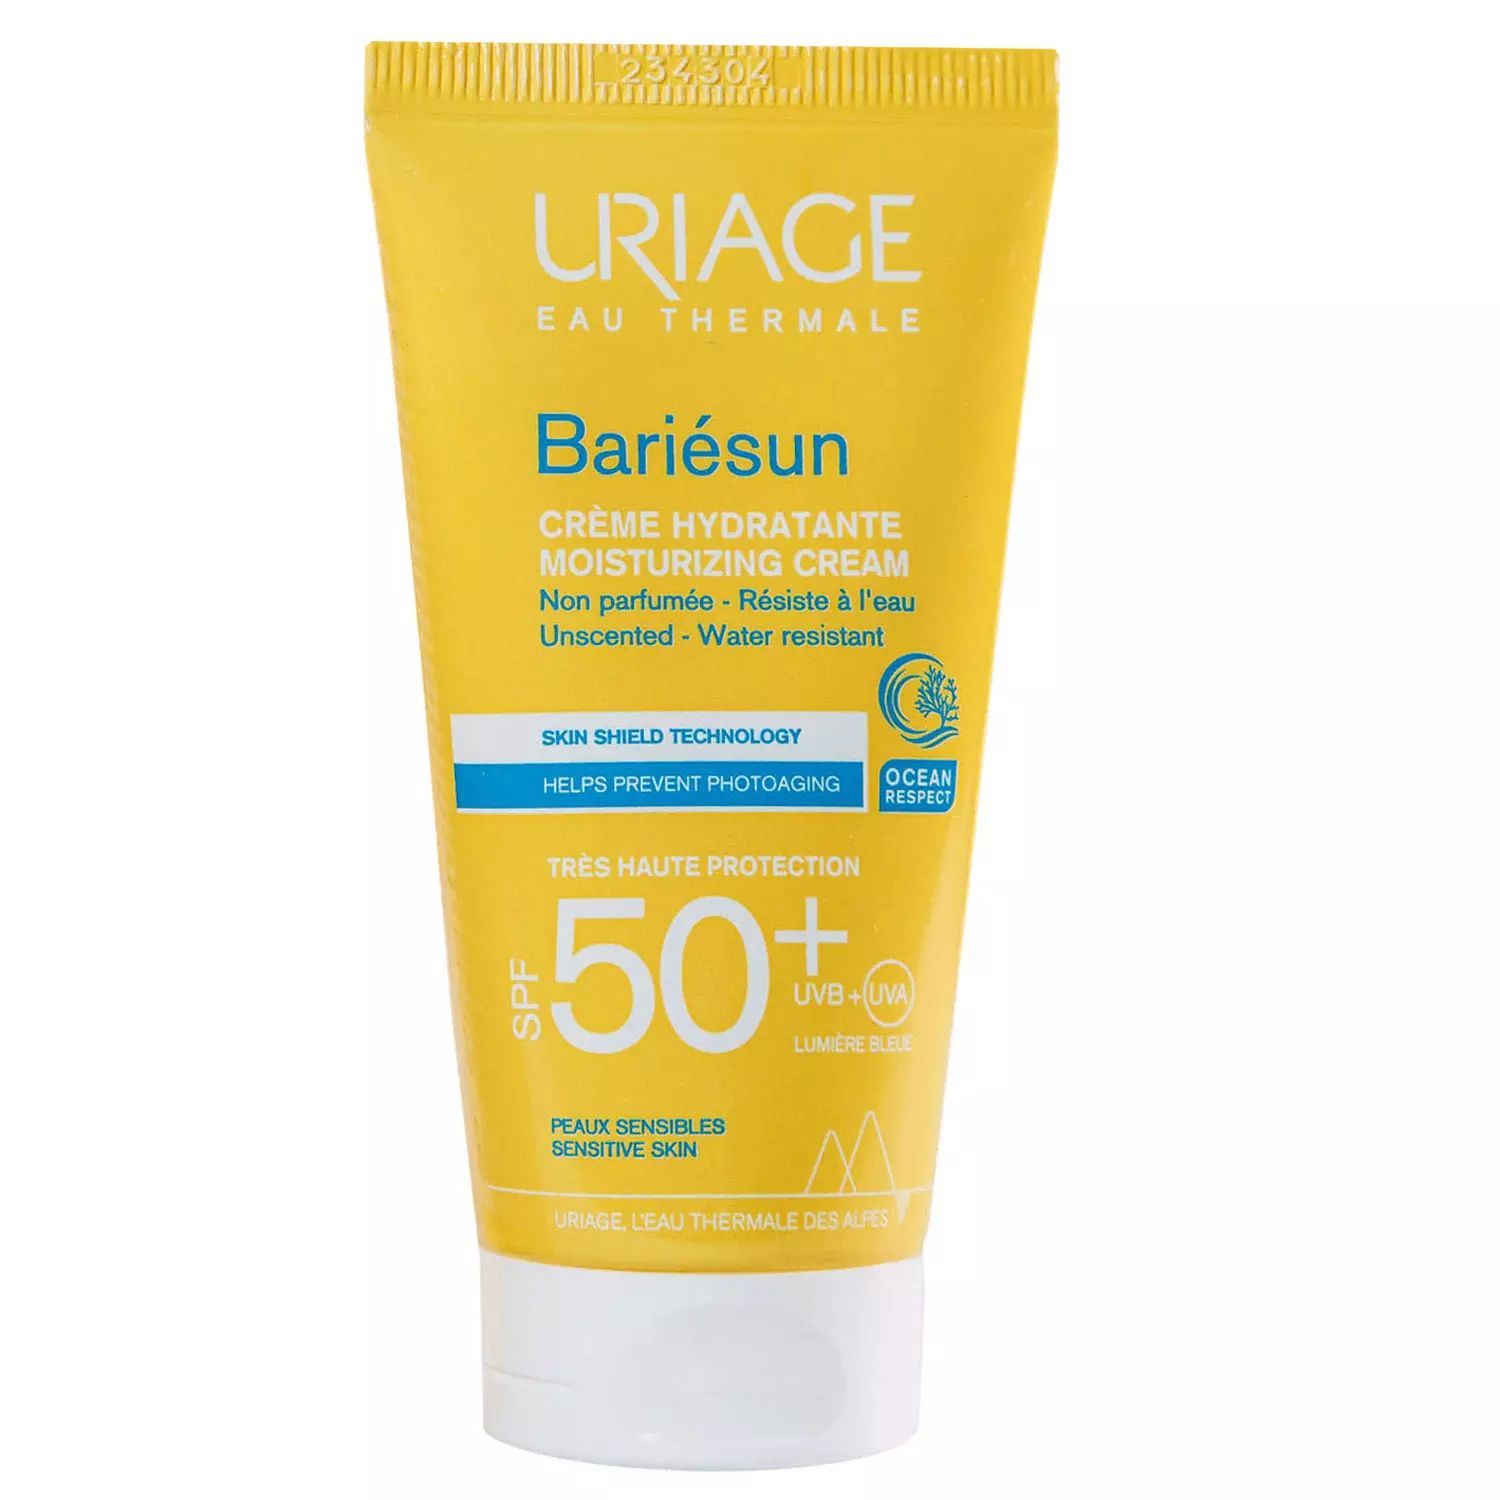 Увлажняющий крем Uriage Bariesun Creme Hydratante SPF 50+, 50 мл beafix крем для ног hemp oil beauty therapy с высоким содержанием конопляного масла